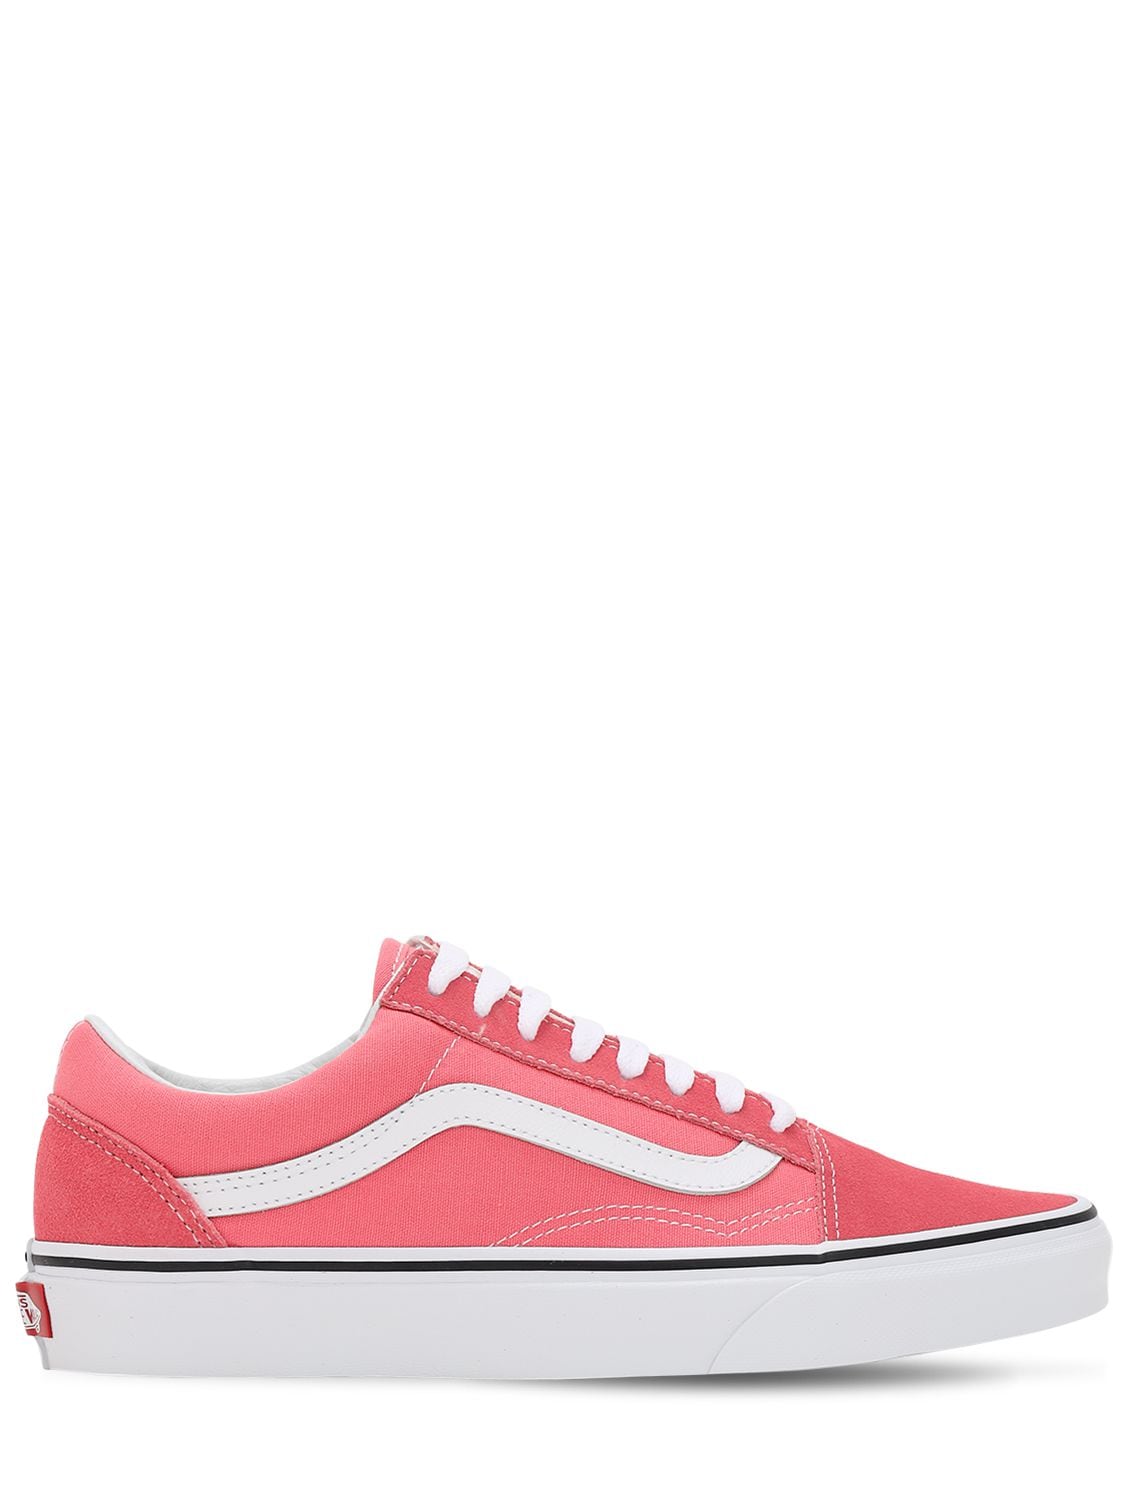 Vans Old Skool Low Top Sneaker In Pink 